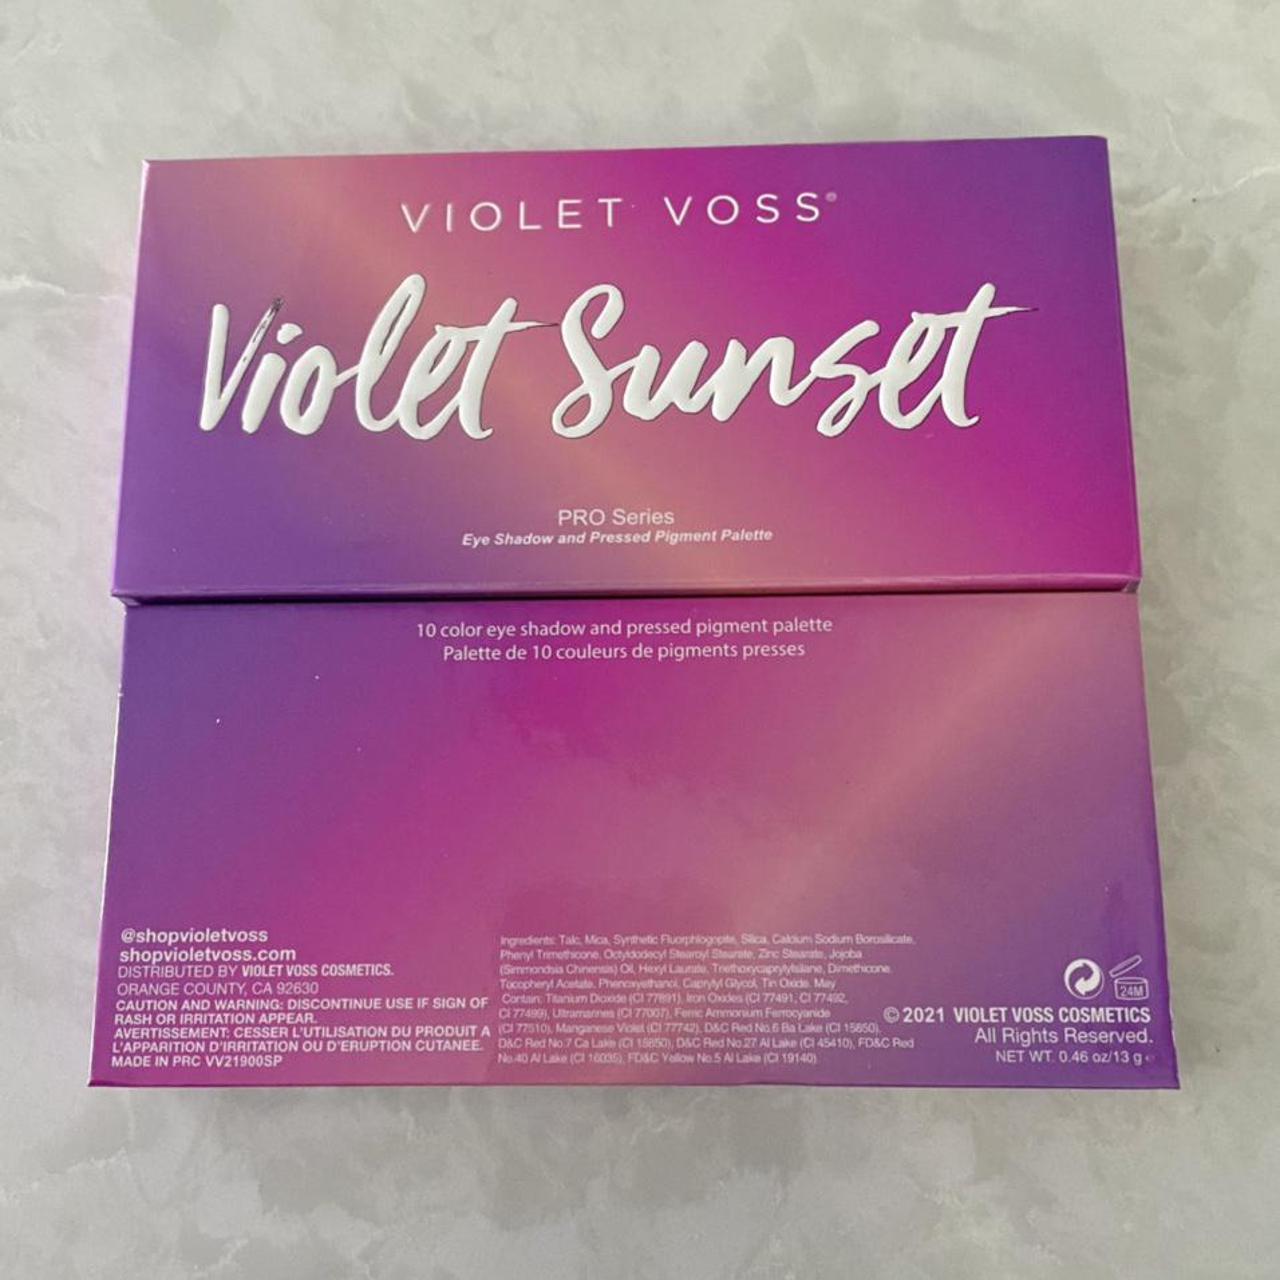 Product Image 2 - Violet Voss violet sunset pro